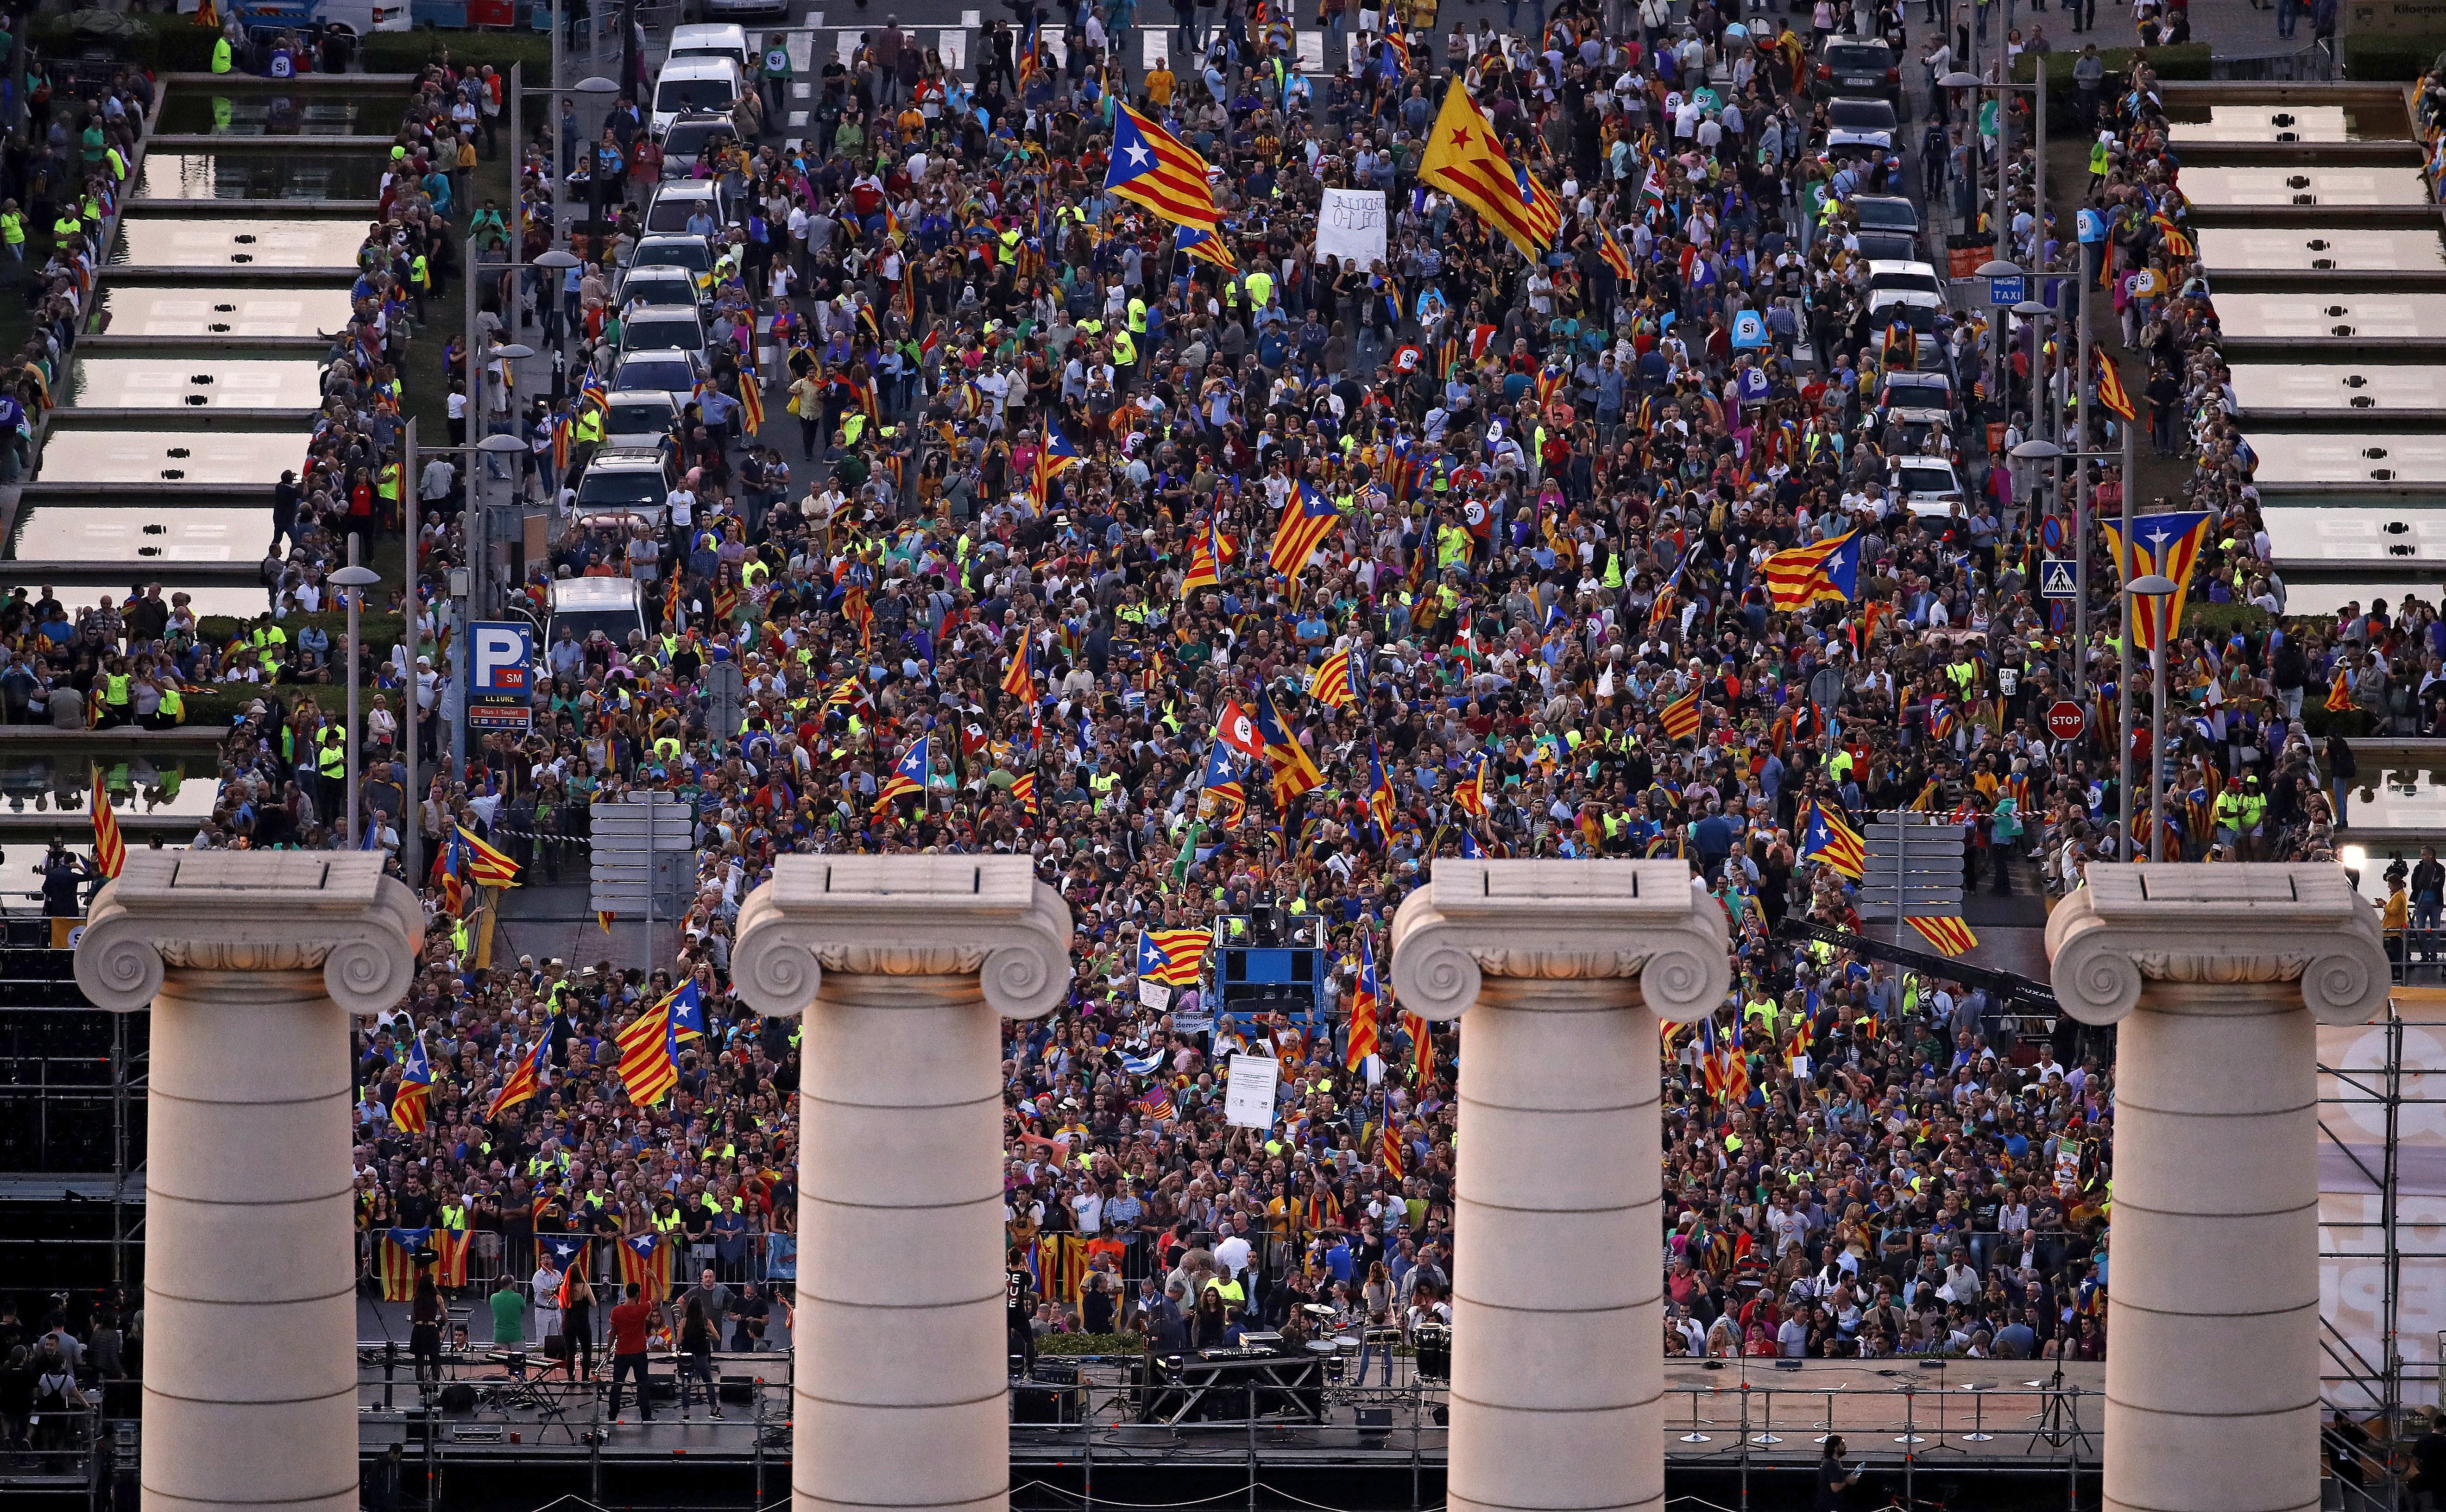 От съдебни битки до шумни улични демонстрации - борбата за провеждането на референдум за независимост в Каталуния е безмилостно жестока. Кулминацията трябва да е в неделя, за когато е насрочено допитването, въпреки опитите на правителството да осуети гласуването.